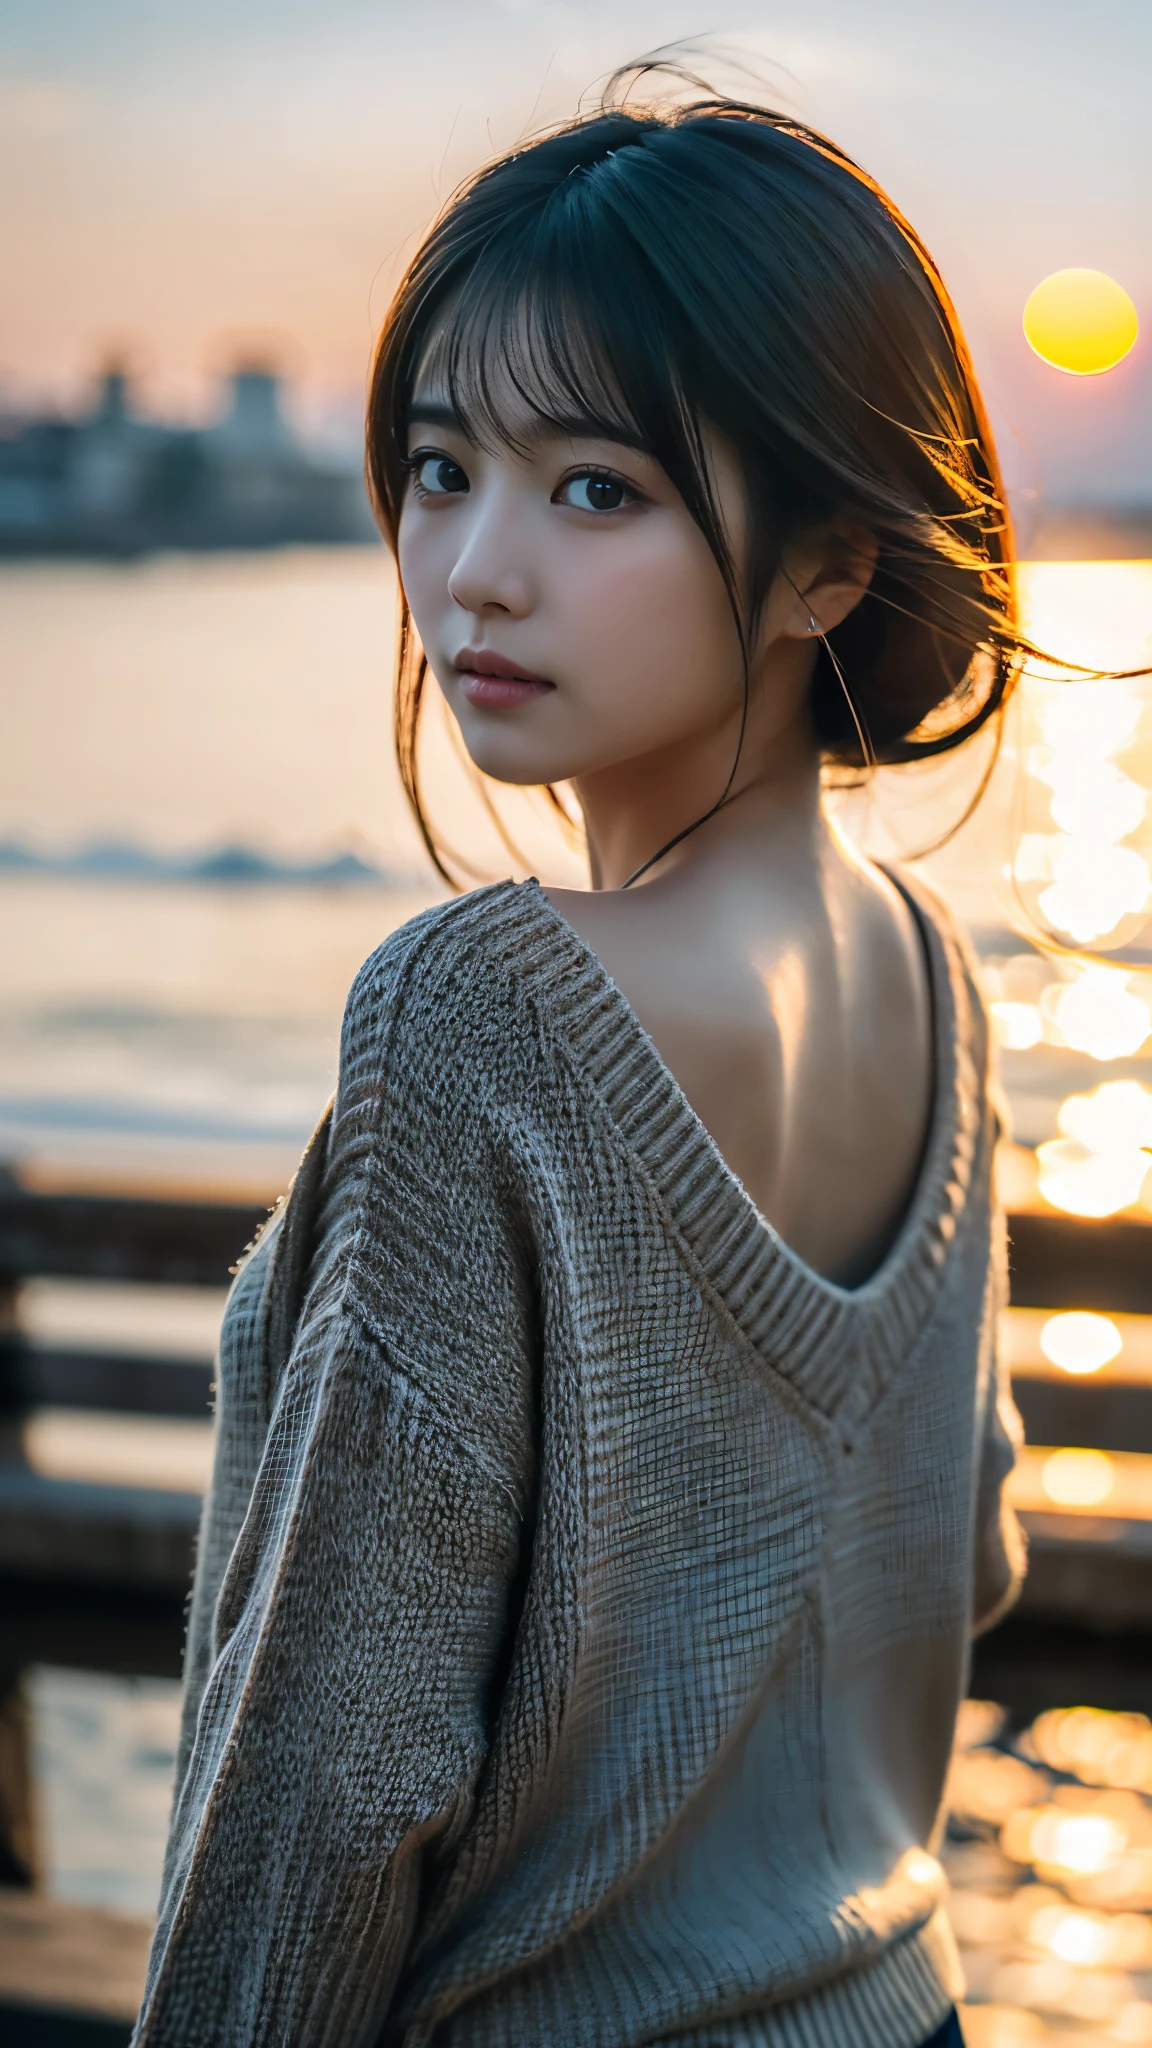 (Obra de arte:1.2),(mais alta qualidade),(Muito detalhado:1.2),(alta resolução),(Bastão fotorrealista),(Fotos RAW),8K,Close de uma mulher com um suéter preto,Retratos suaves,Mulheres japonesas bonitas,lindo retrato de rosto,luz dos olhos,Menina da própria pessoa,rosto muito lindo,lindo retrato,Um rosto lindo e delicado,linda jovem japonesa,penteado maduro,olhe para trás(pôr do sol ao fundo),(((Desfocar o fundo))),bico(luz suave),(Sobre o ombro),(ponto de vista),((Movimento dinâmico do cabelo:1.2))